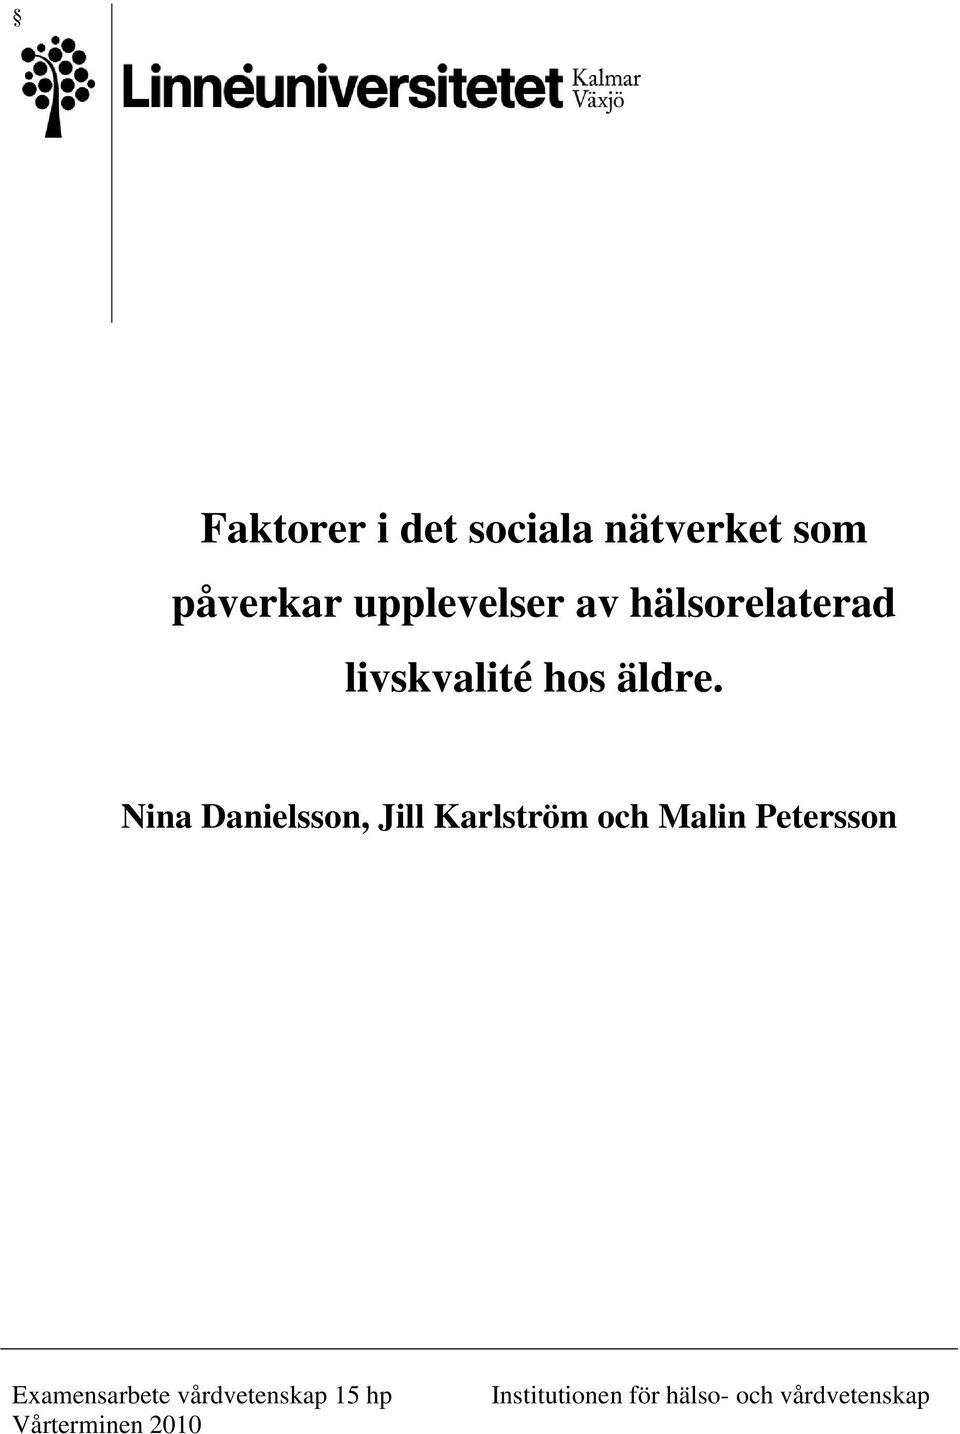 Nina Danielsson, Jill Karlström och Malin Petersson